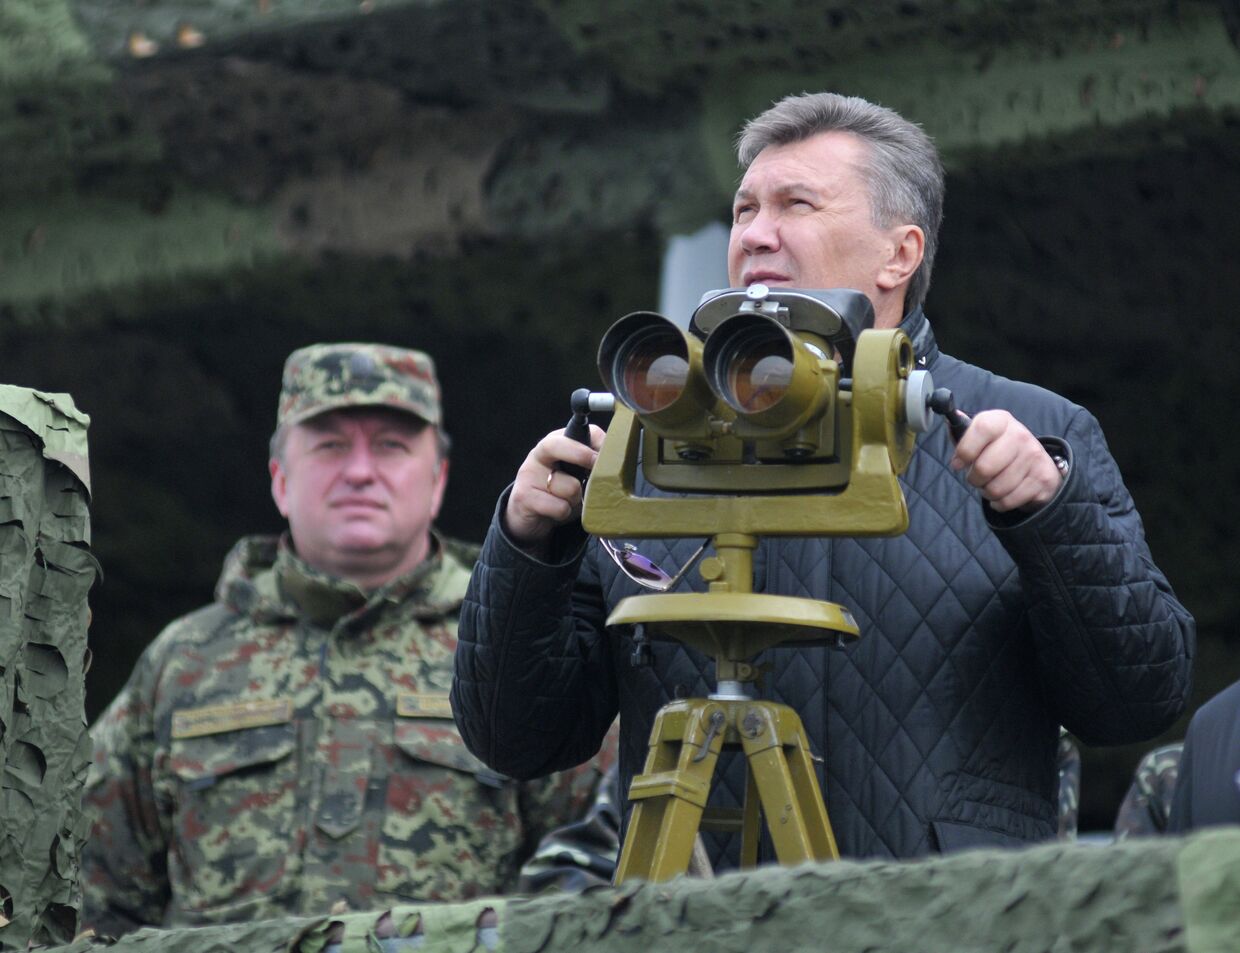 Президент Украины Виктор Янукович. Архивное фото